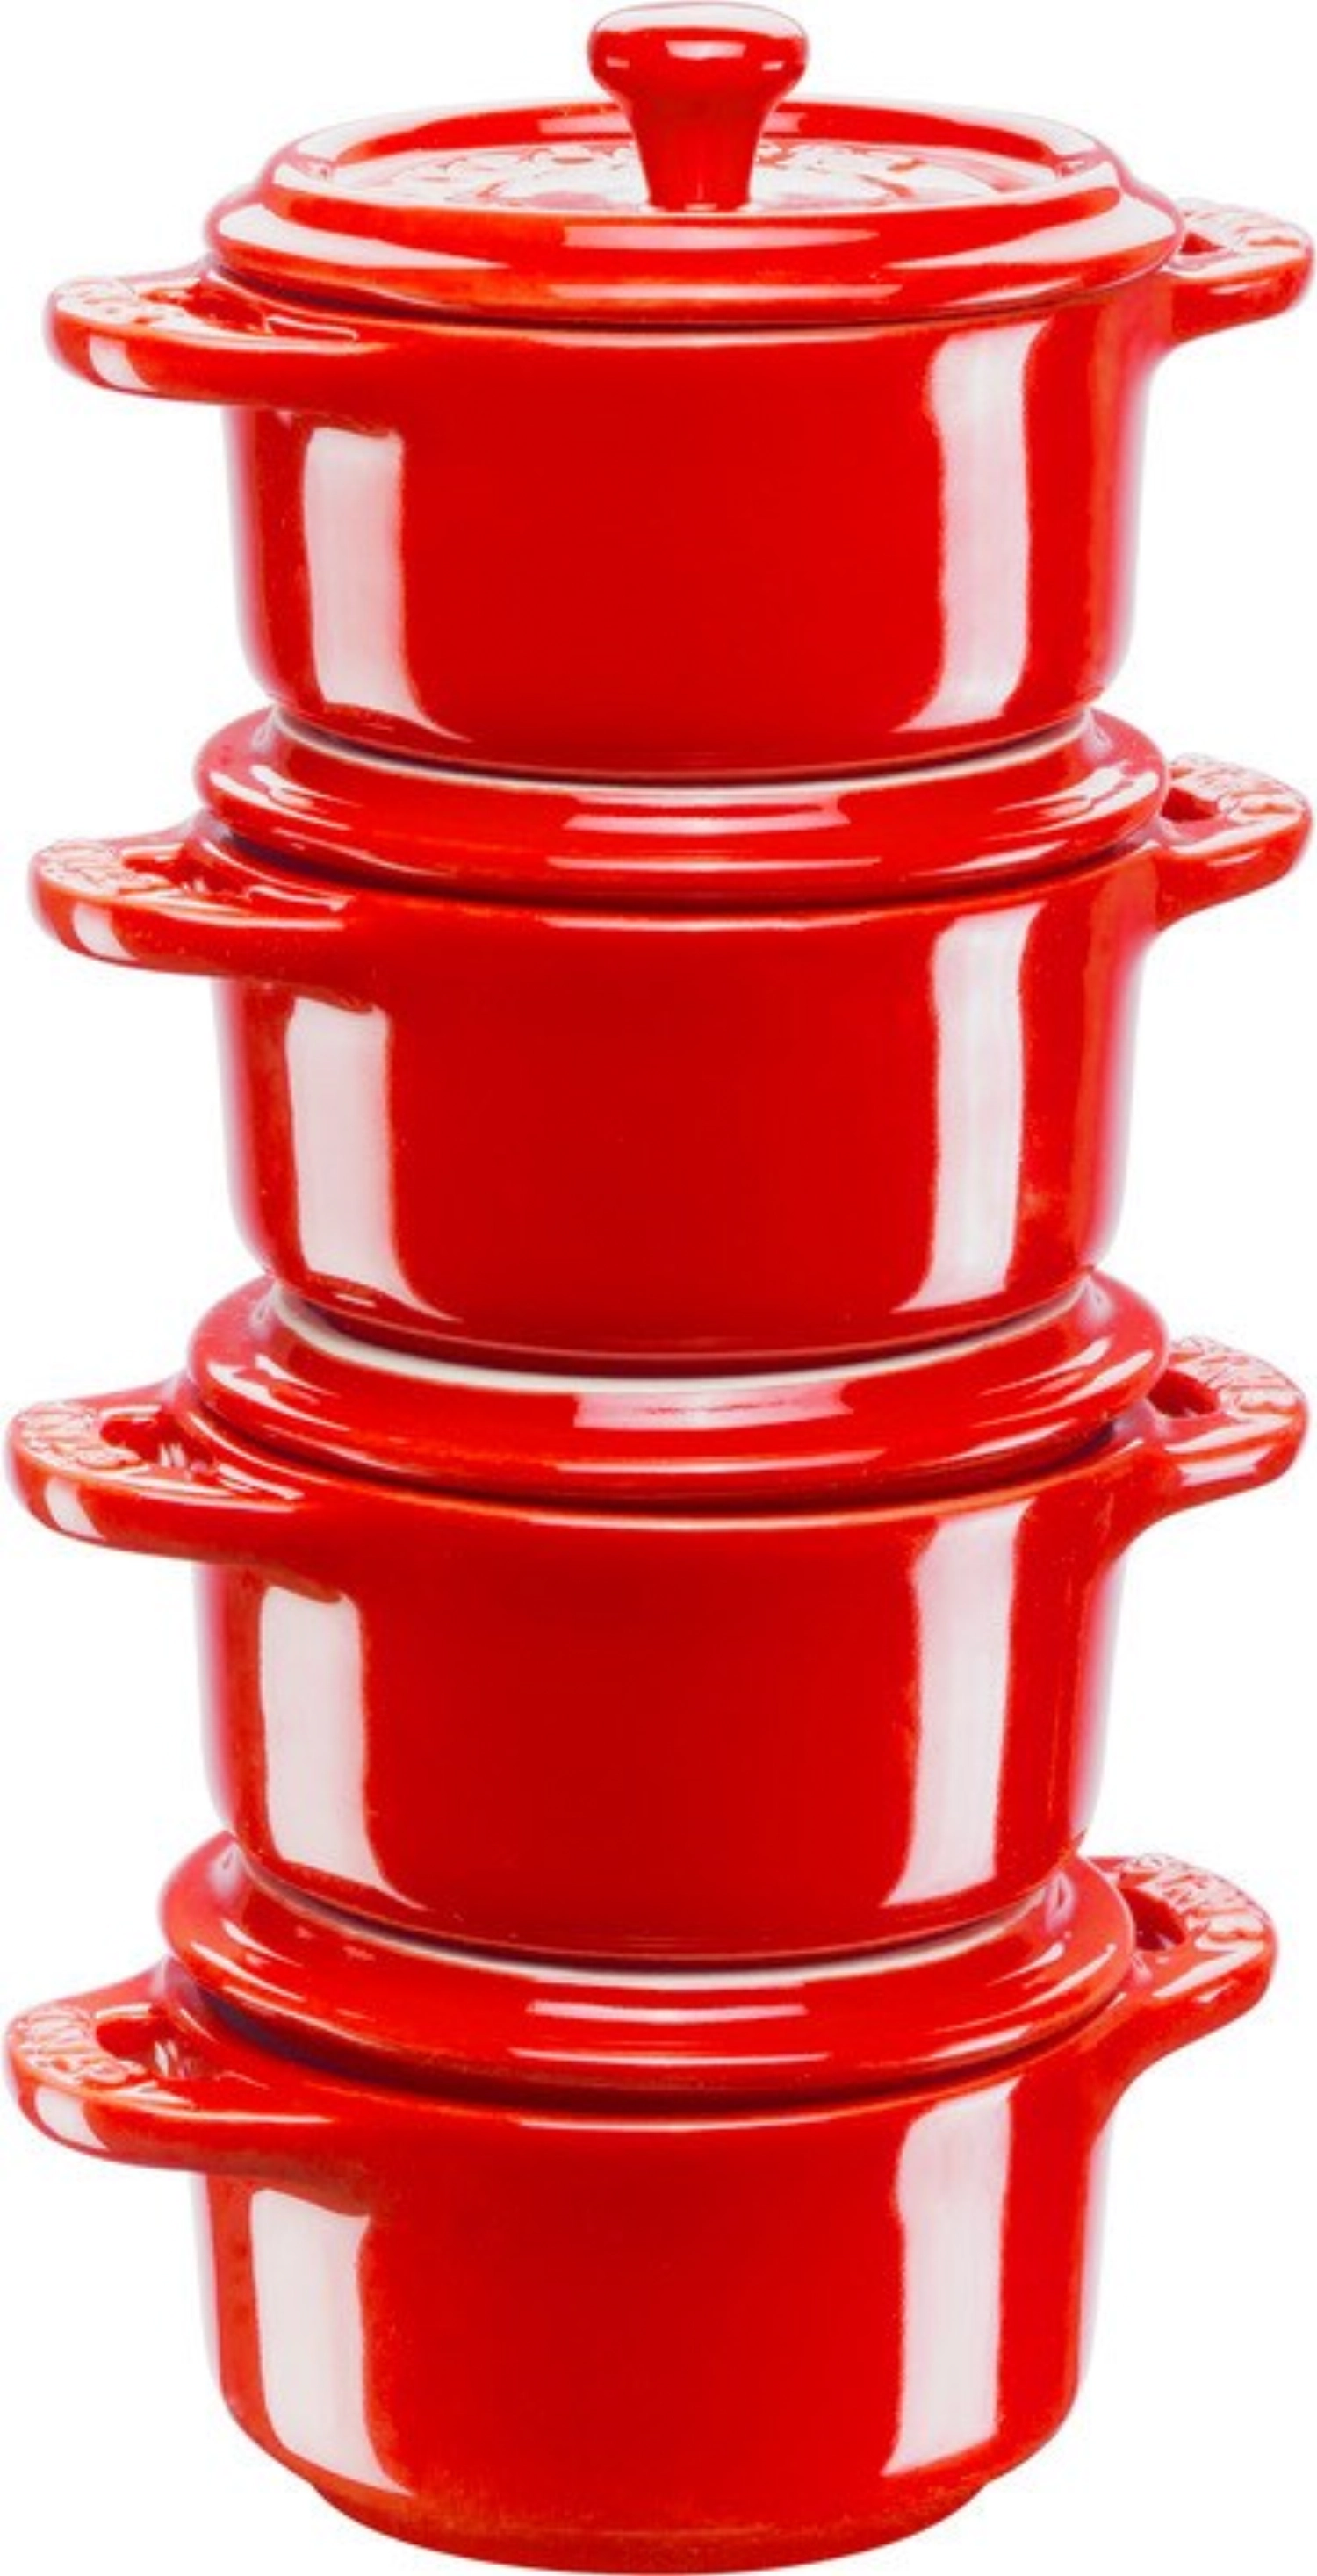 4 mini cocottes rondes en céramique rouge cerise 0.2l d10 cm